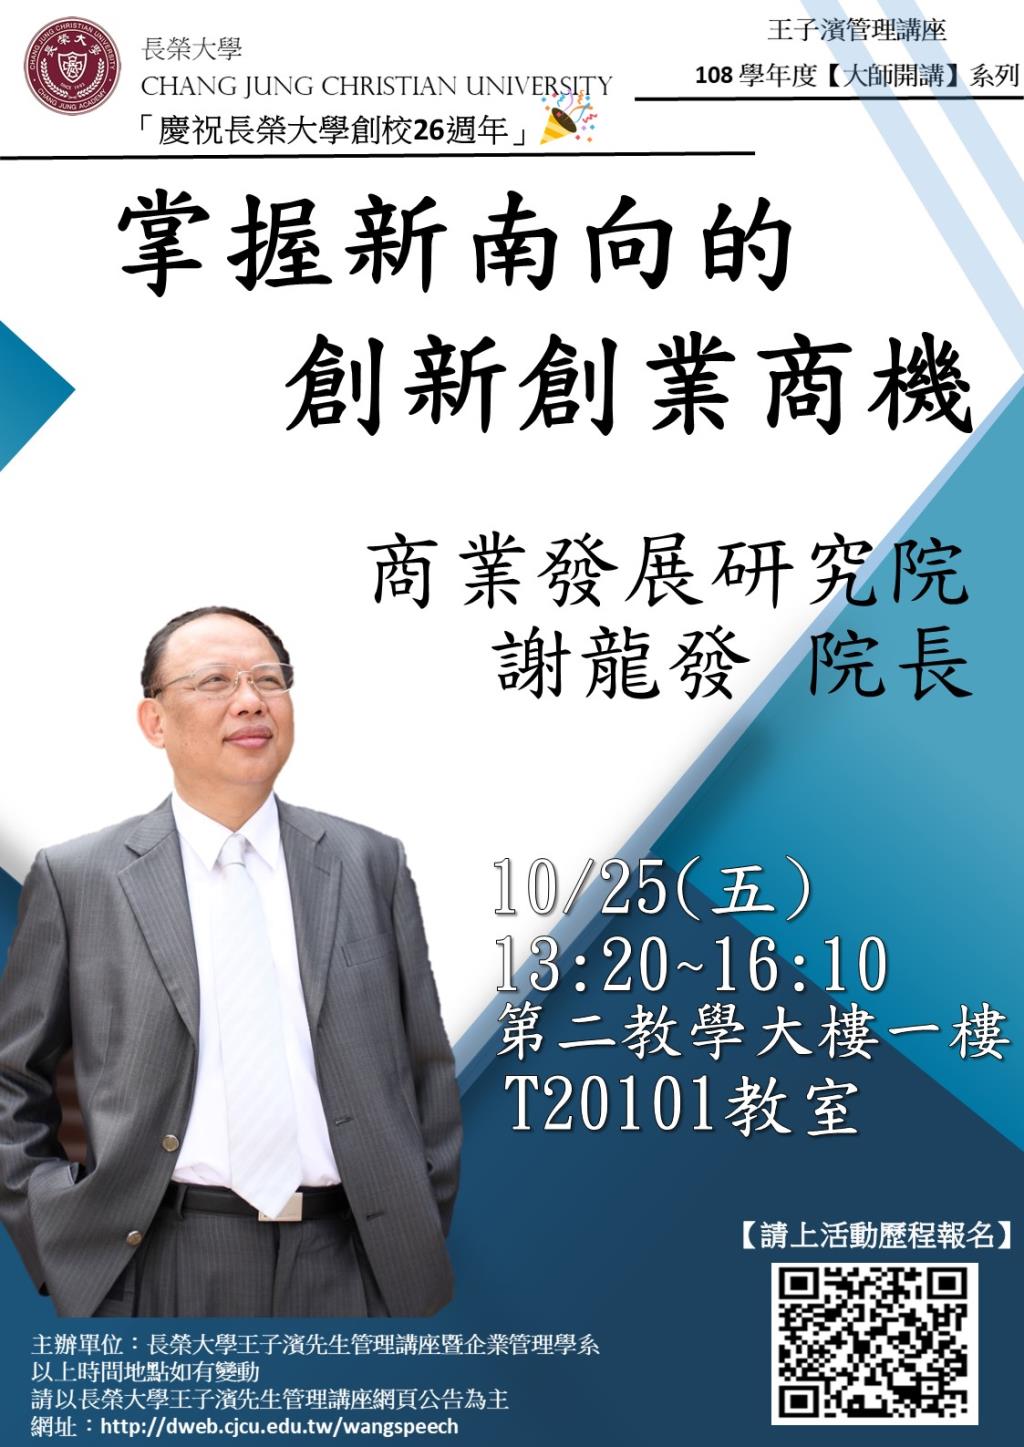 敬邀參加本週五下午(10/25)王子濱先生管理講---商業發展研究院 謝龍發院長